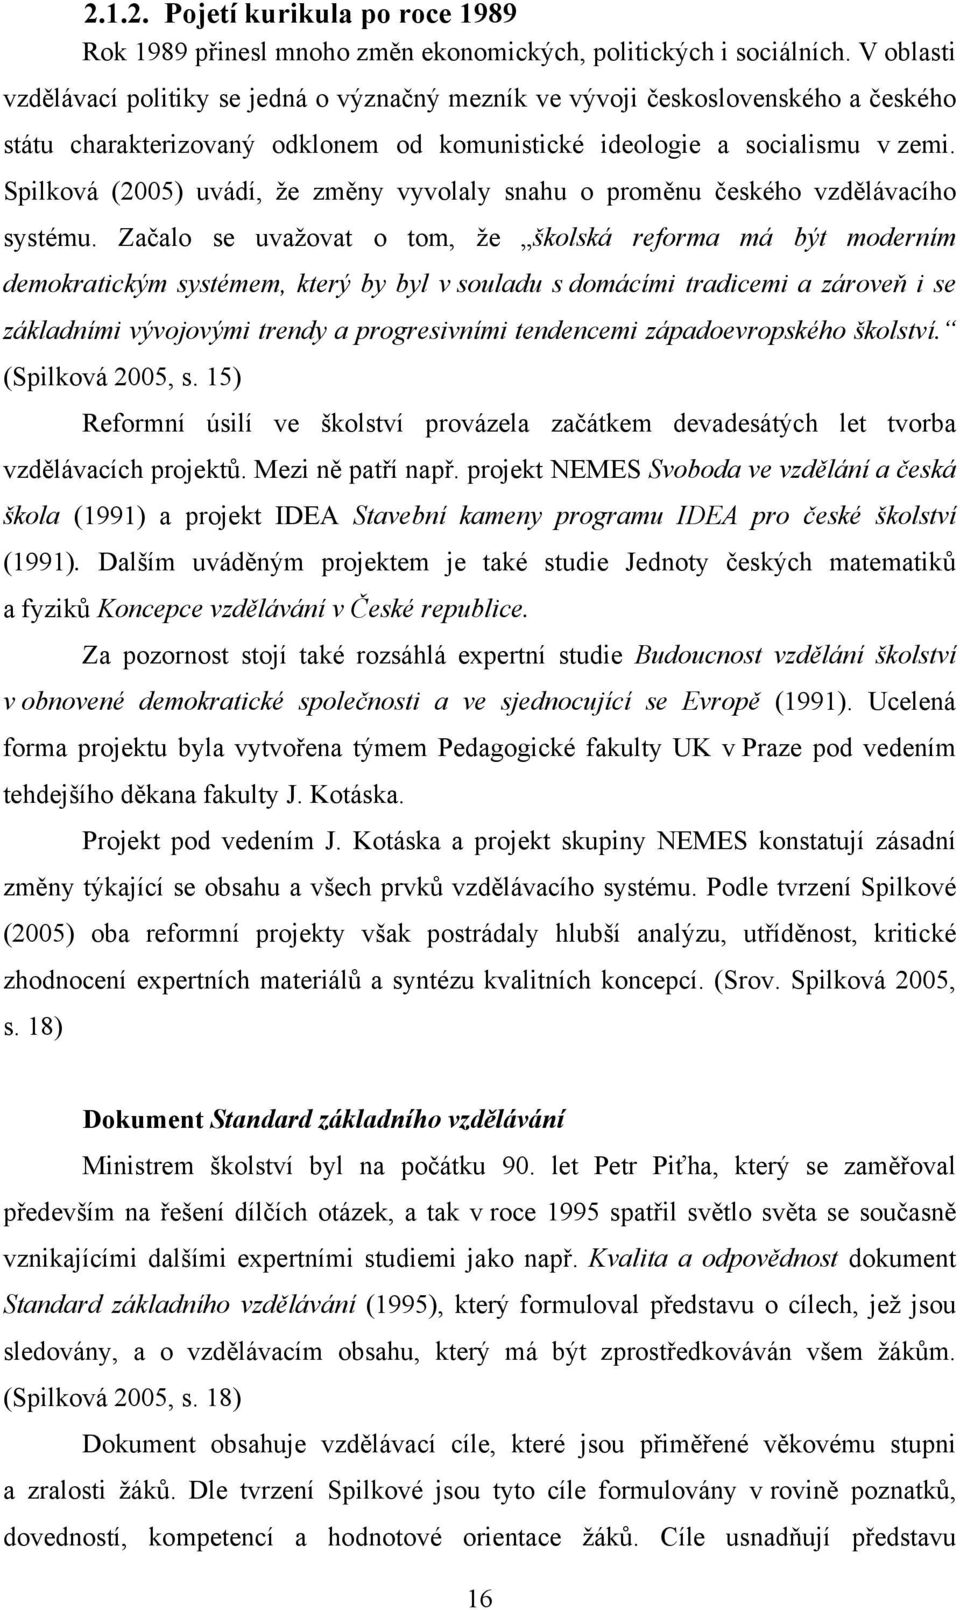 Spilková (2005) uvádí, že změny vyvolaly snahu o proměnu českého vzdělávacího systému.